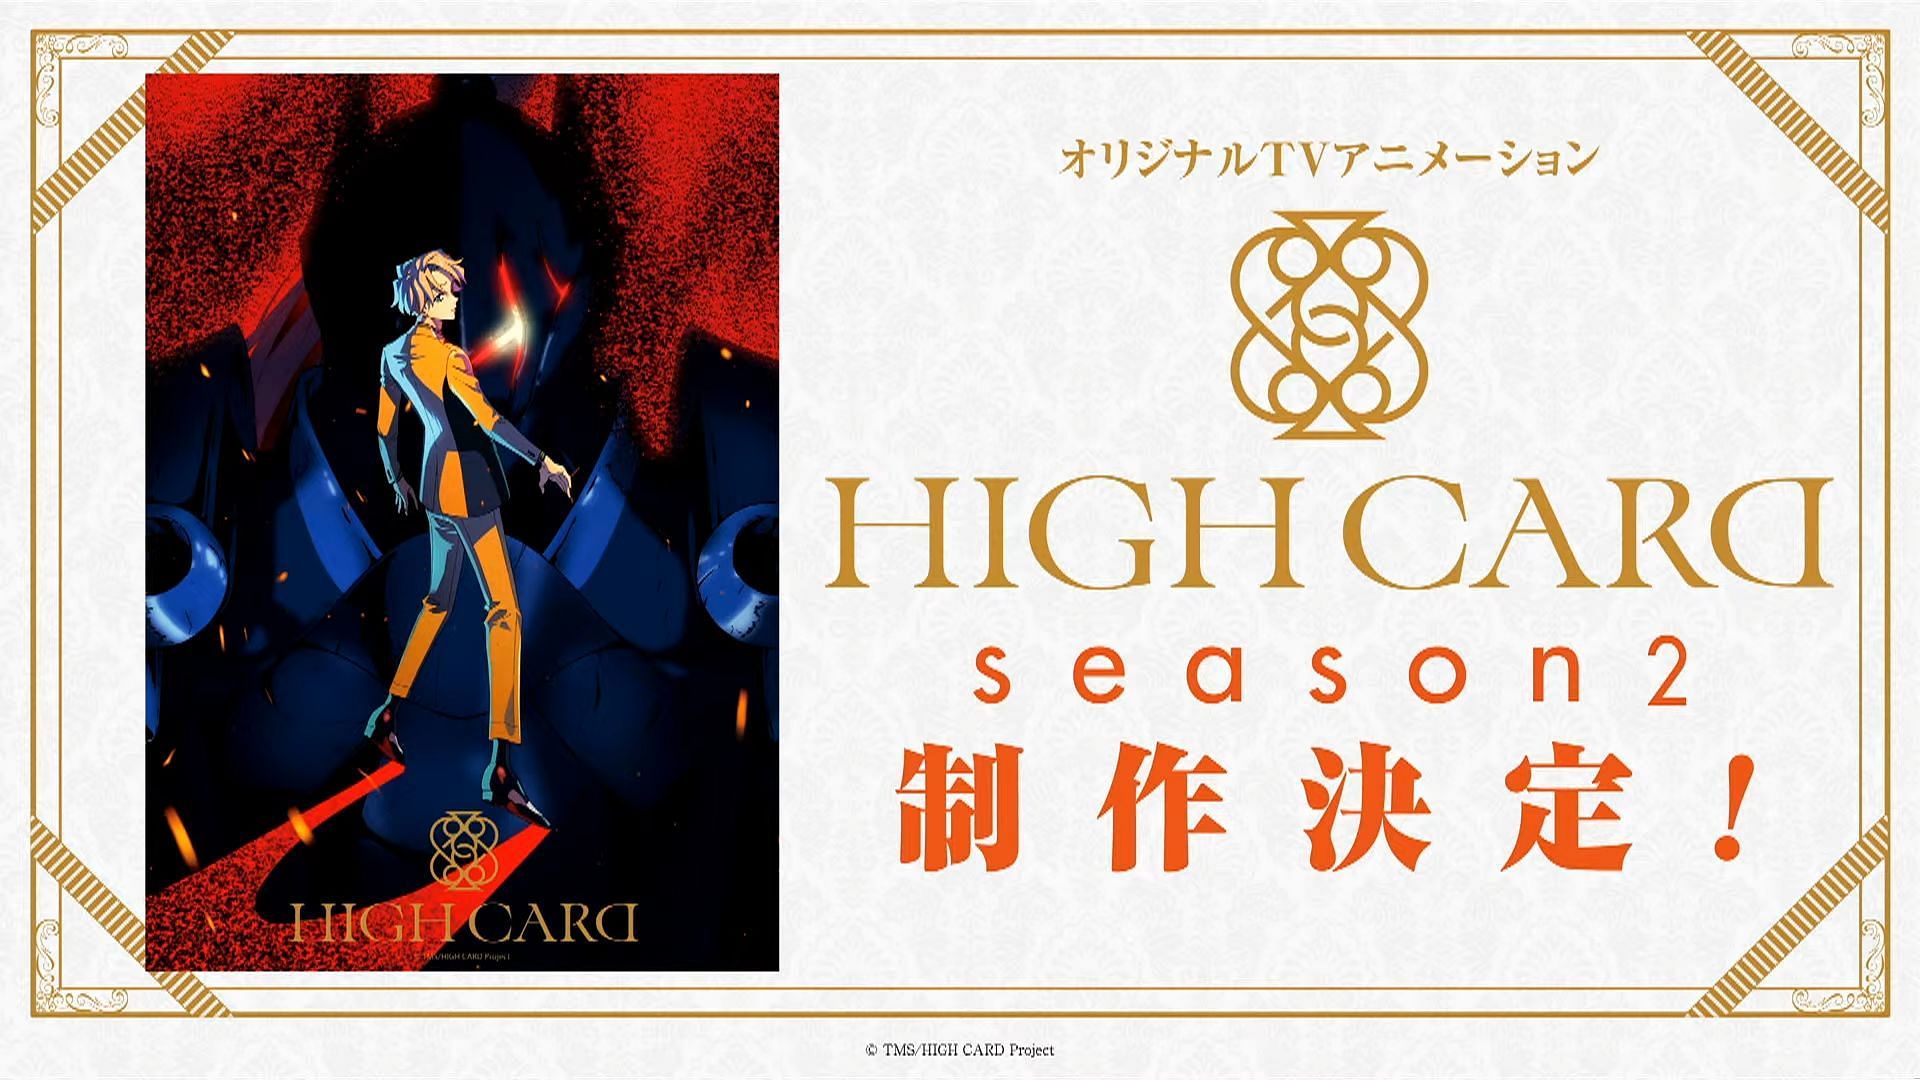 High Card Season 2: trailer release + release window